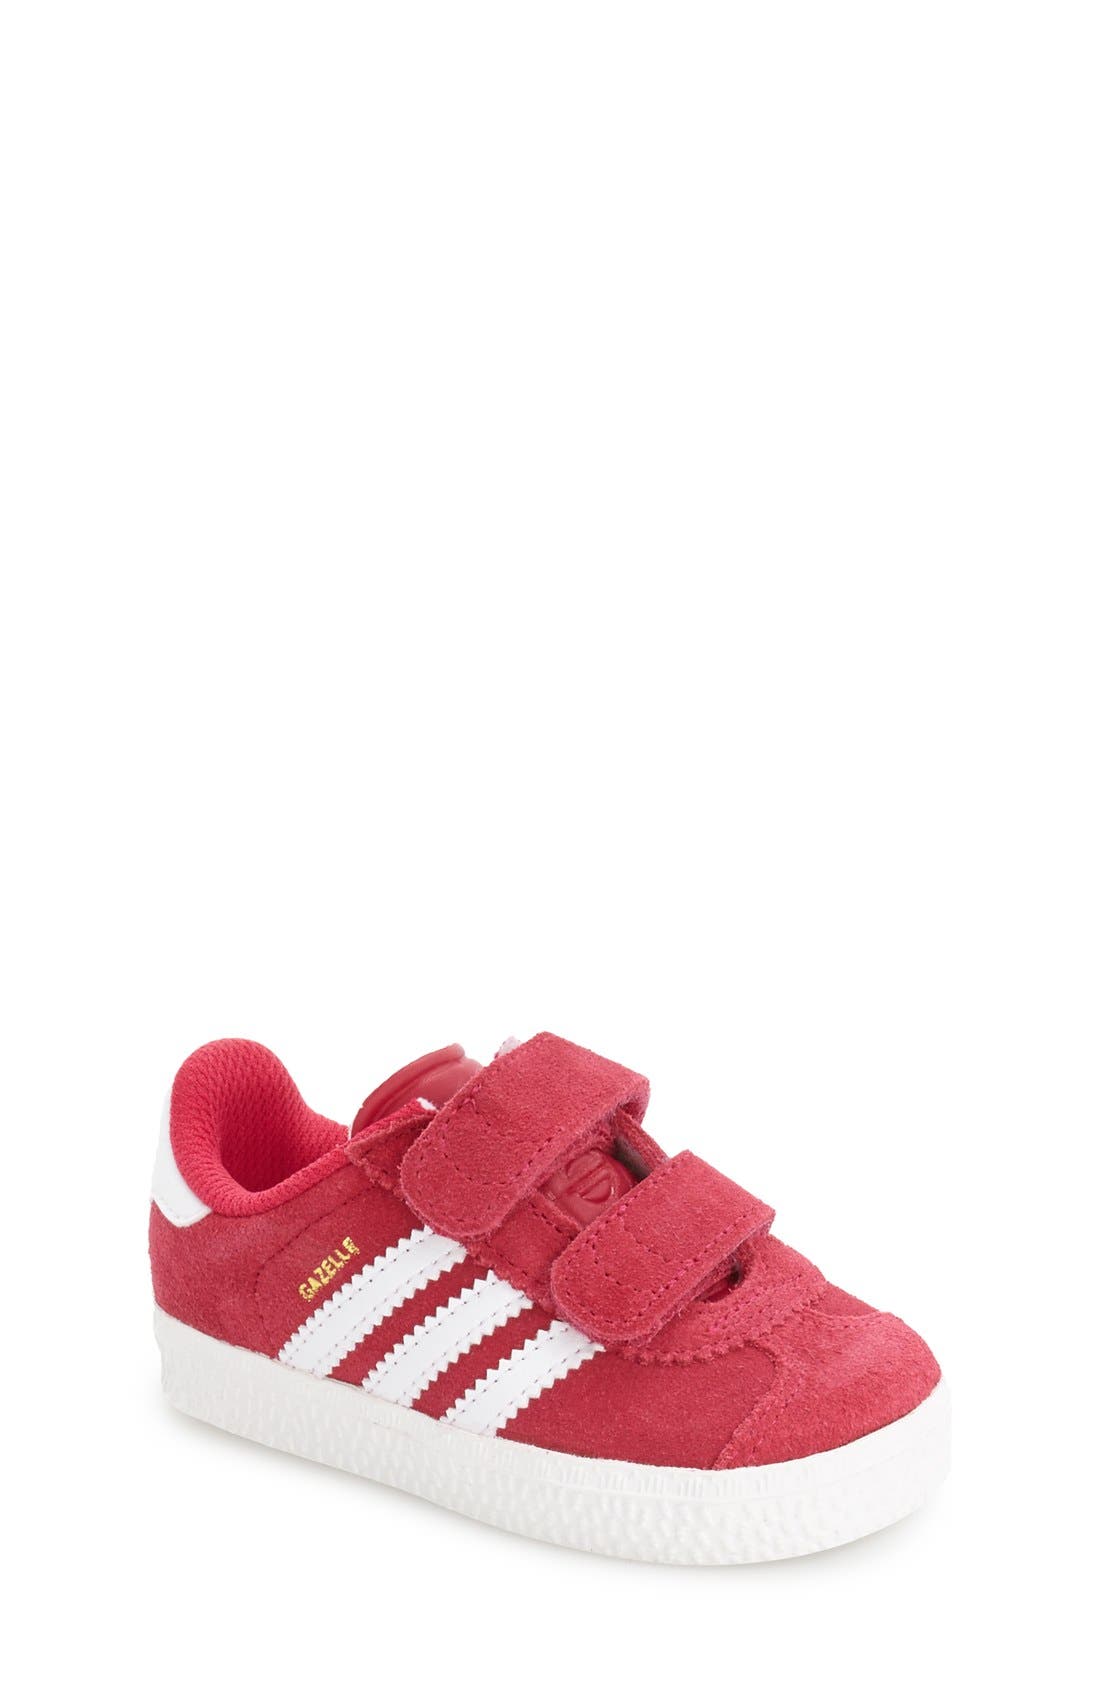 toddler adidas gazelle pink